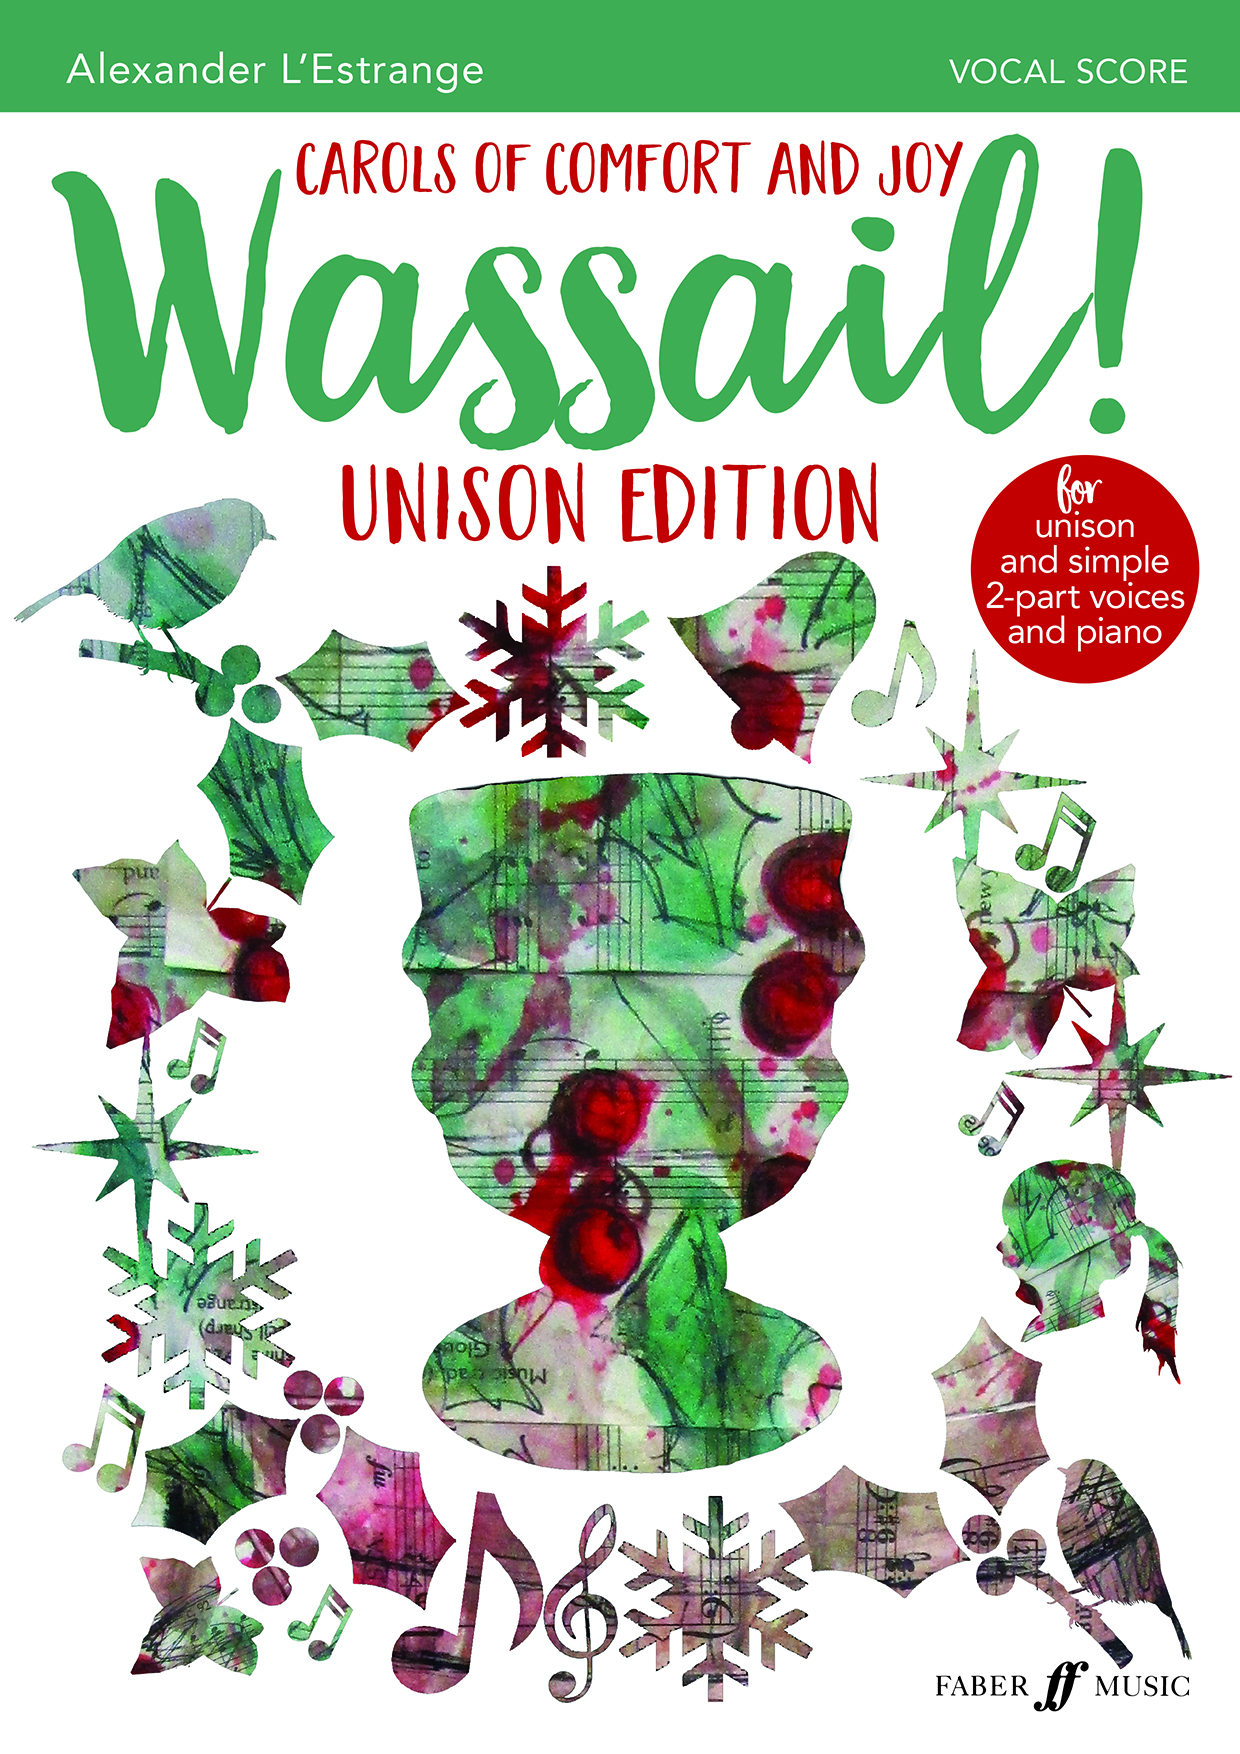 Wassail! Unison Edition (L'ESTRANGE ALEXANDER)